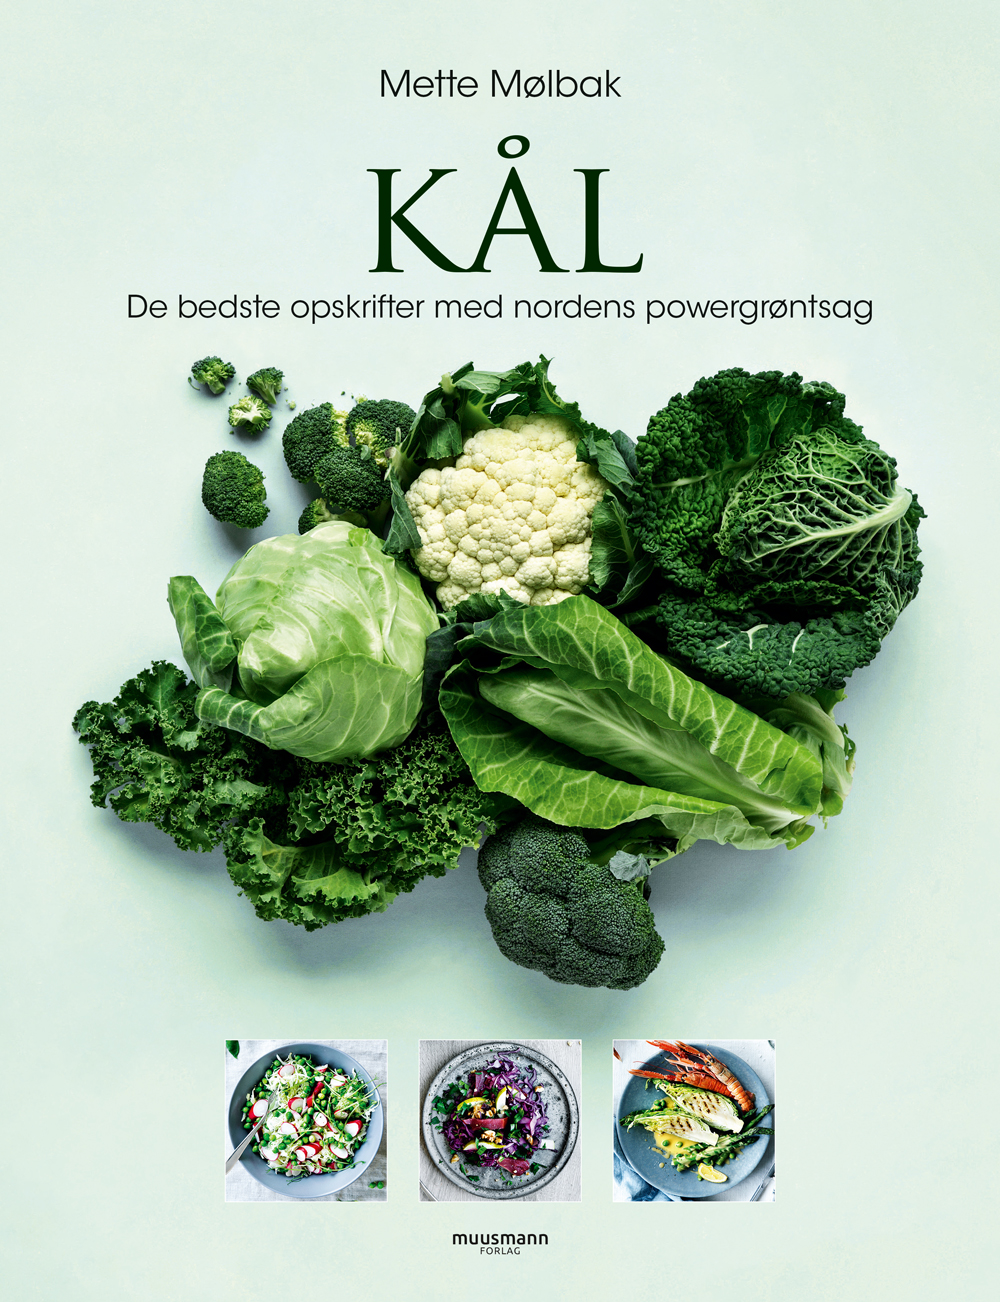 Der er spændende opskrifter i kogebogen Kål - de bedste opskrifter med nordens powergrøntsag.